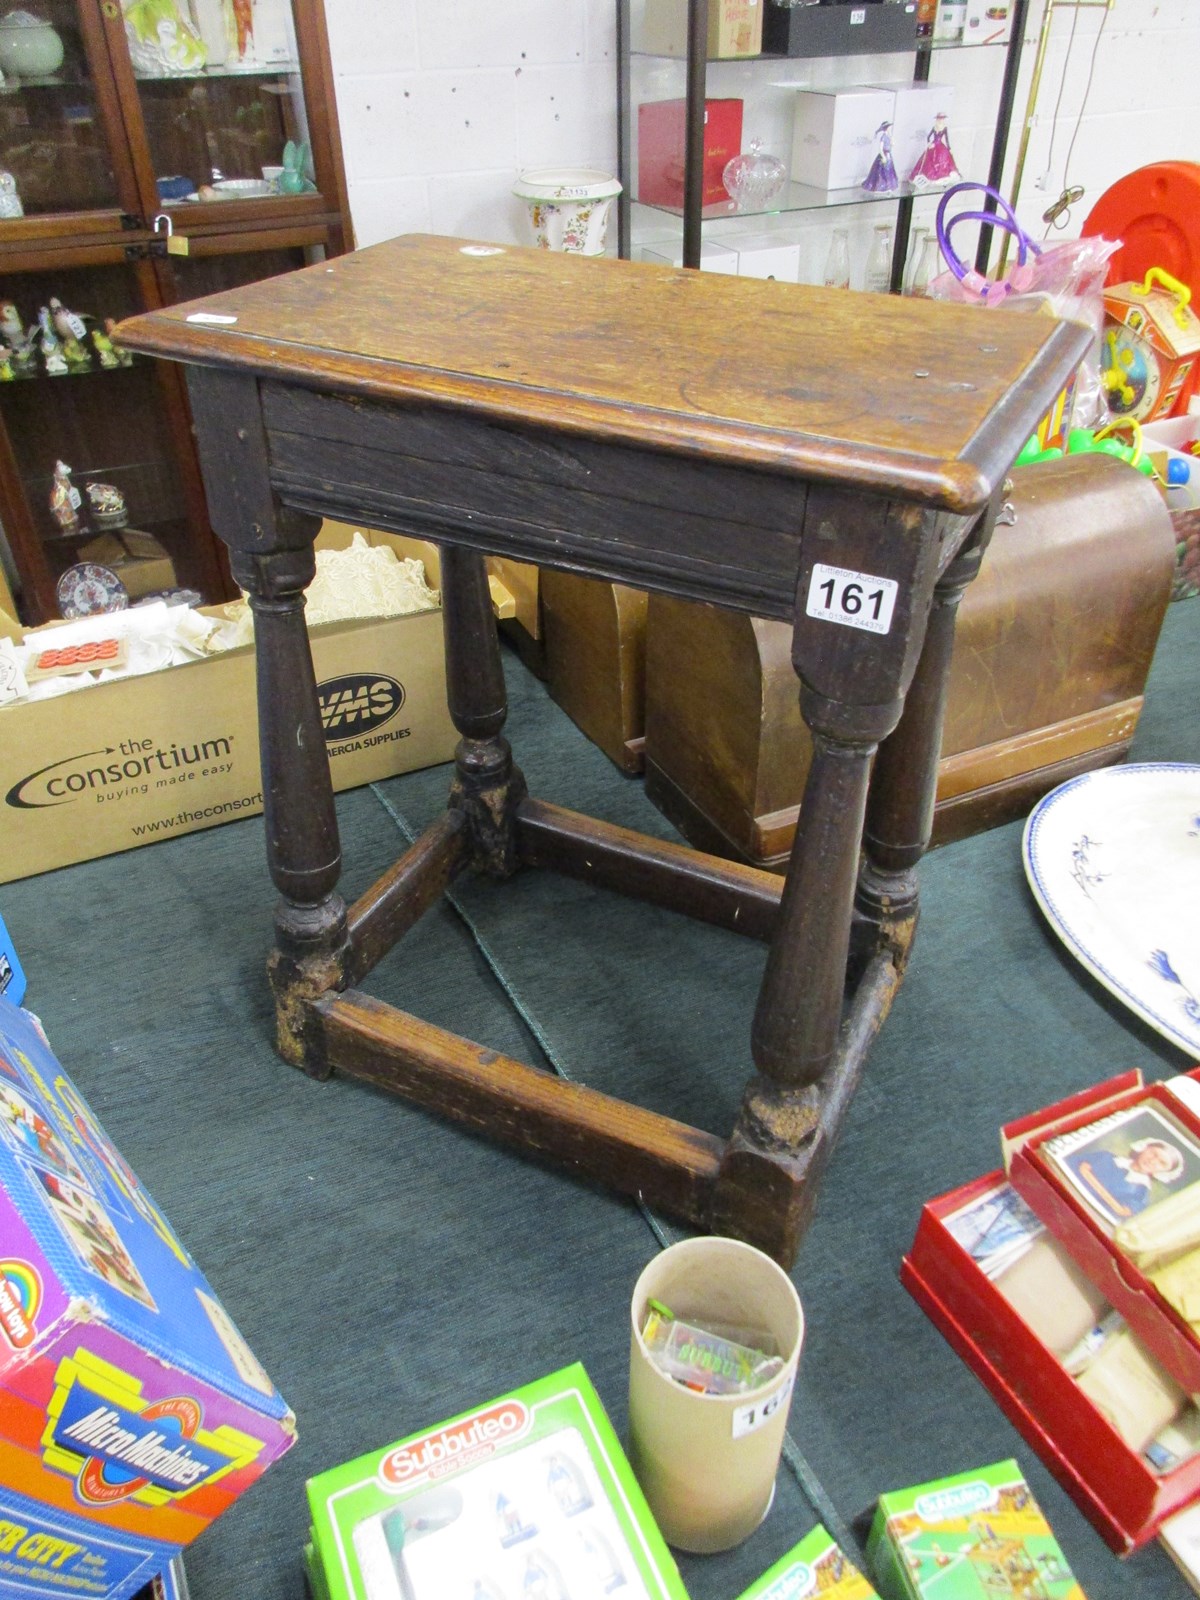 Early oak joint stool